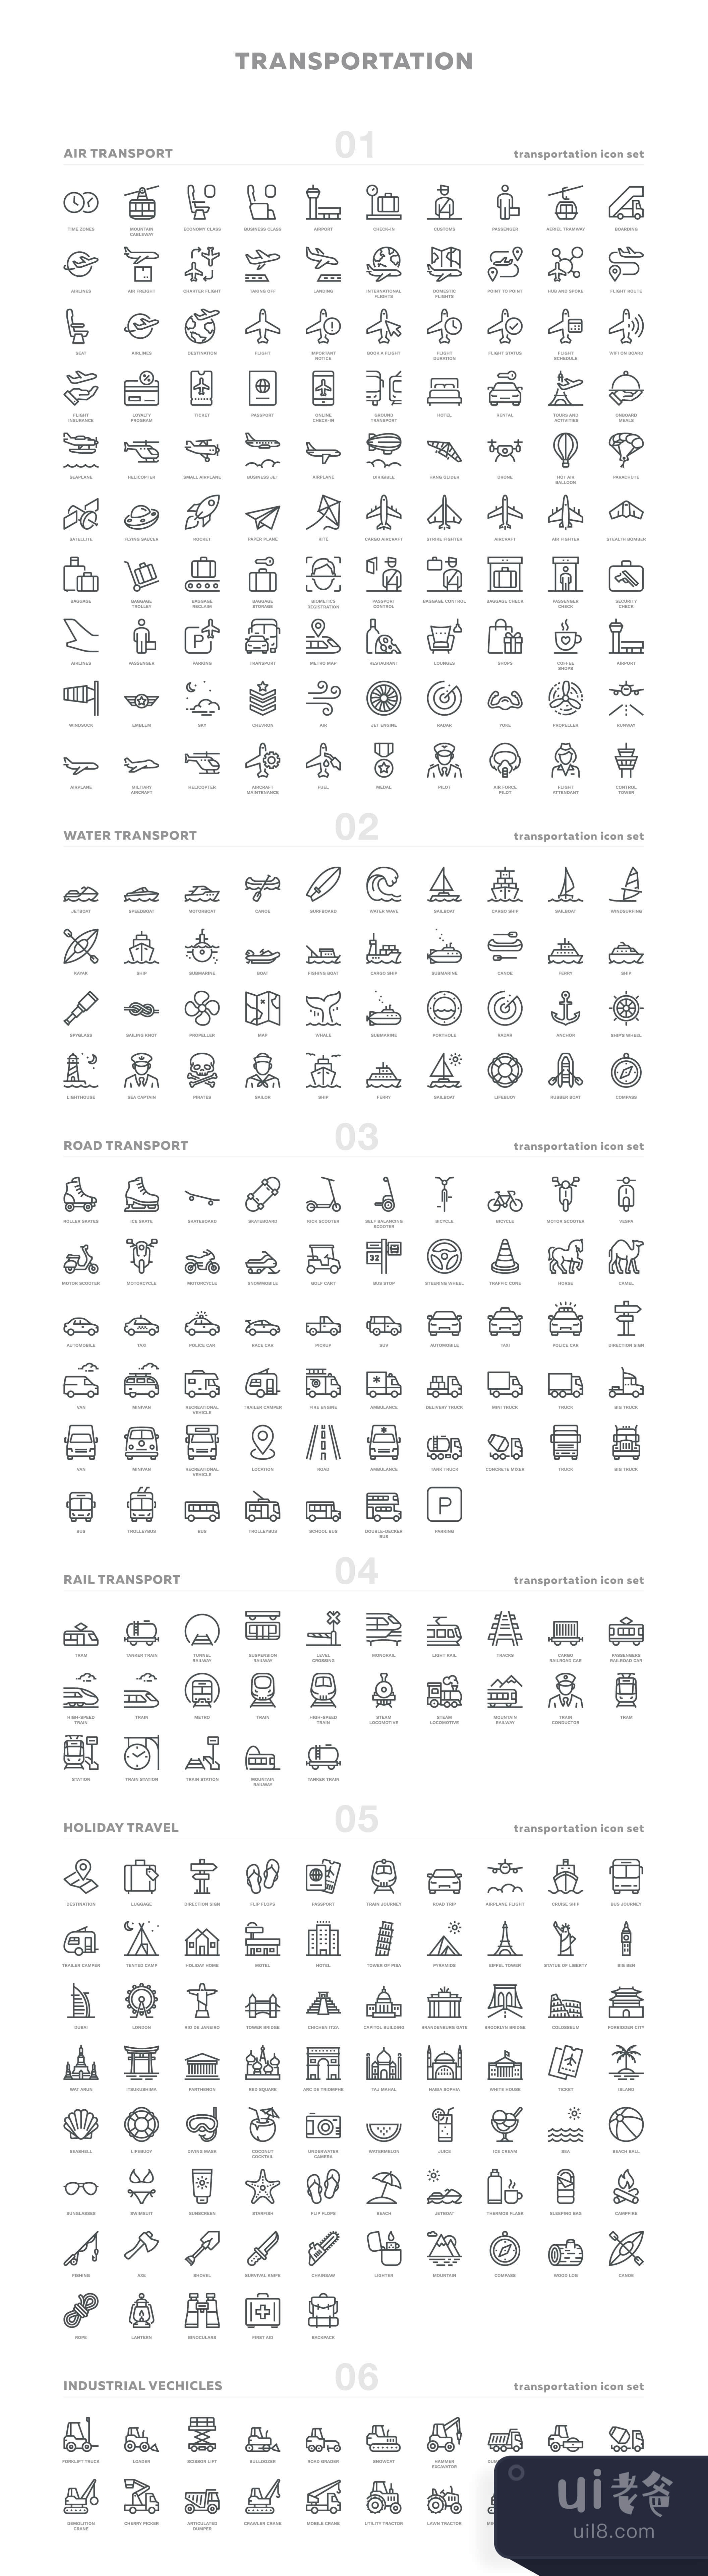 交通工具图标 (Transportation Icons)插图